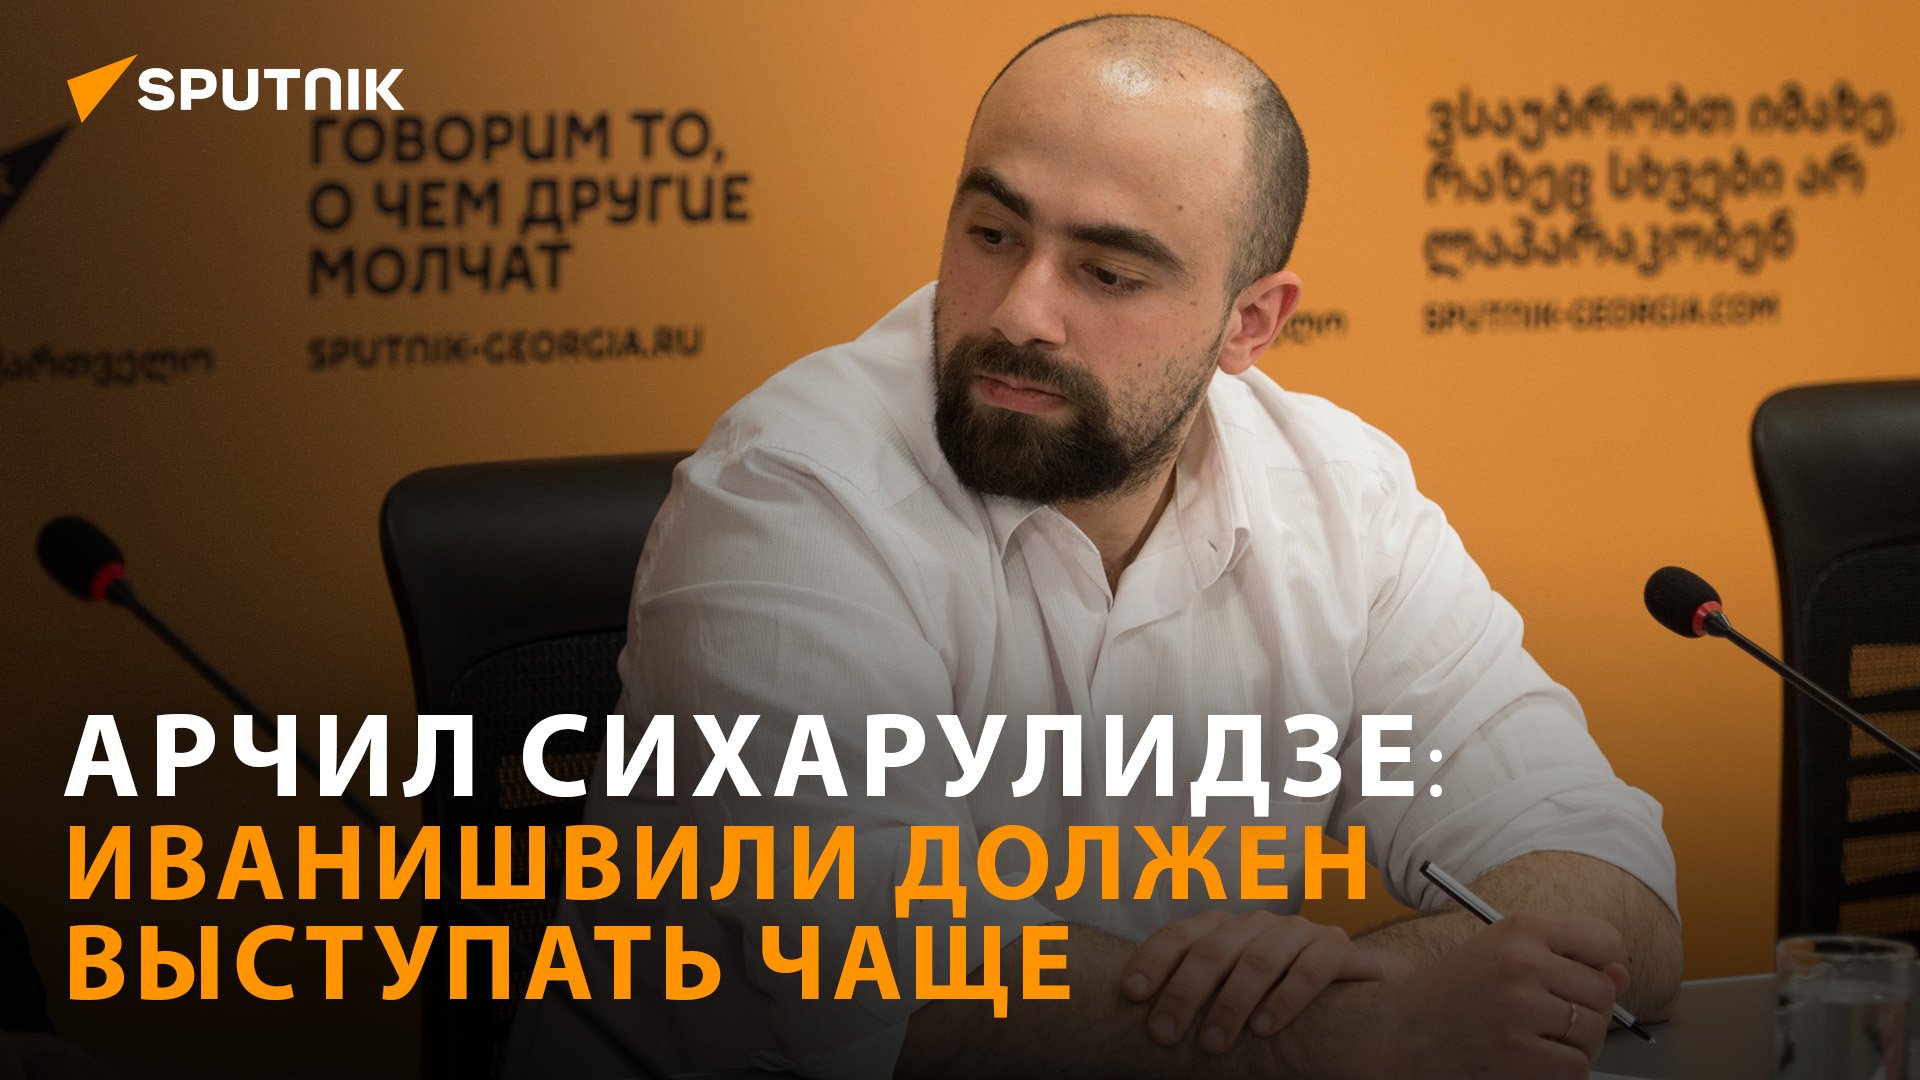 Запад признает Иванишвили важным игроком - мнение политолога